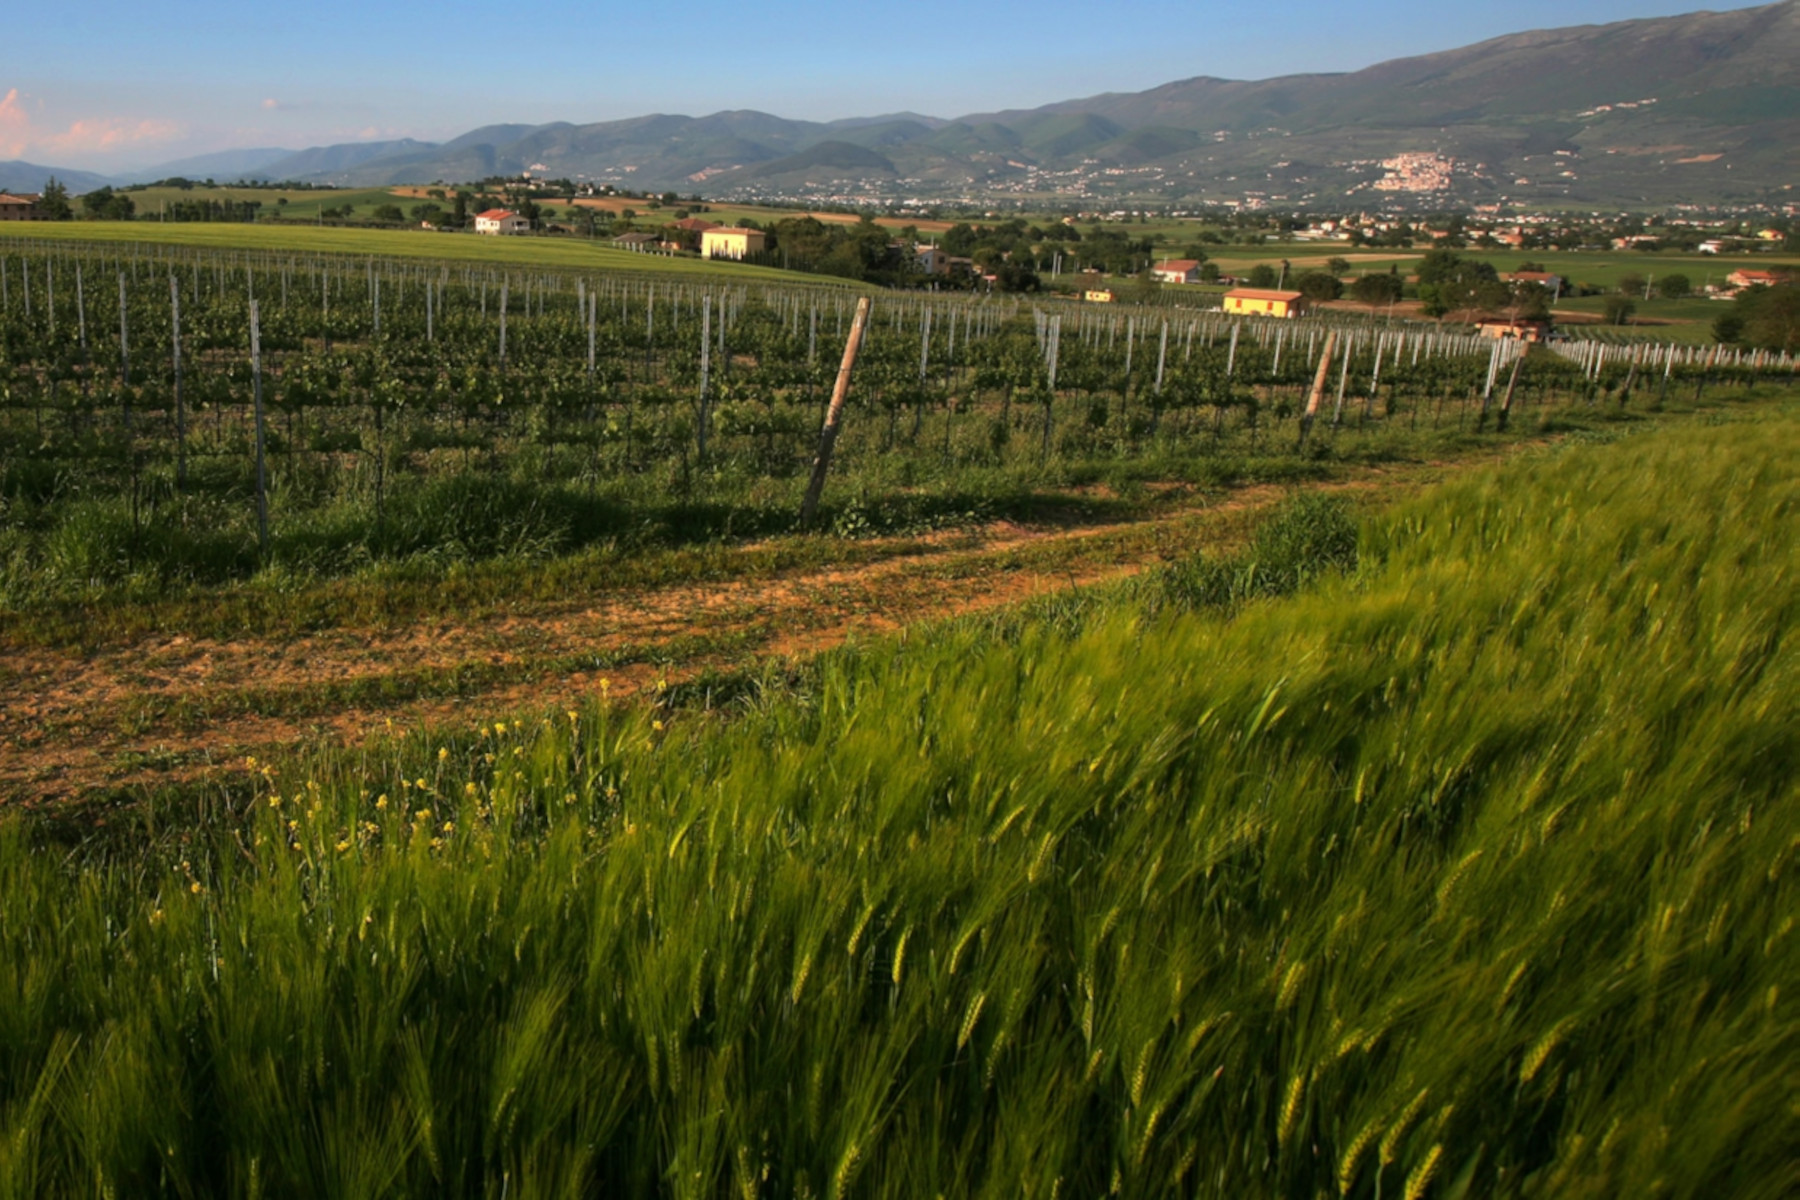 L’Azienda Agricola Bocale (Montefalco) ha scelto OREV® per la tracciabilità e l’anticontraffazione dei suoi vini